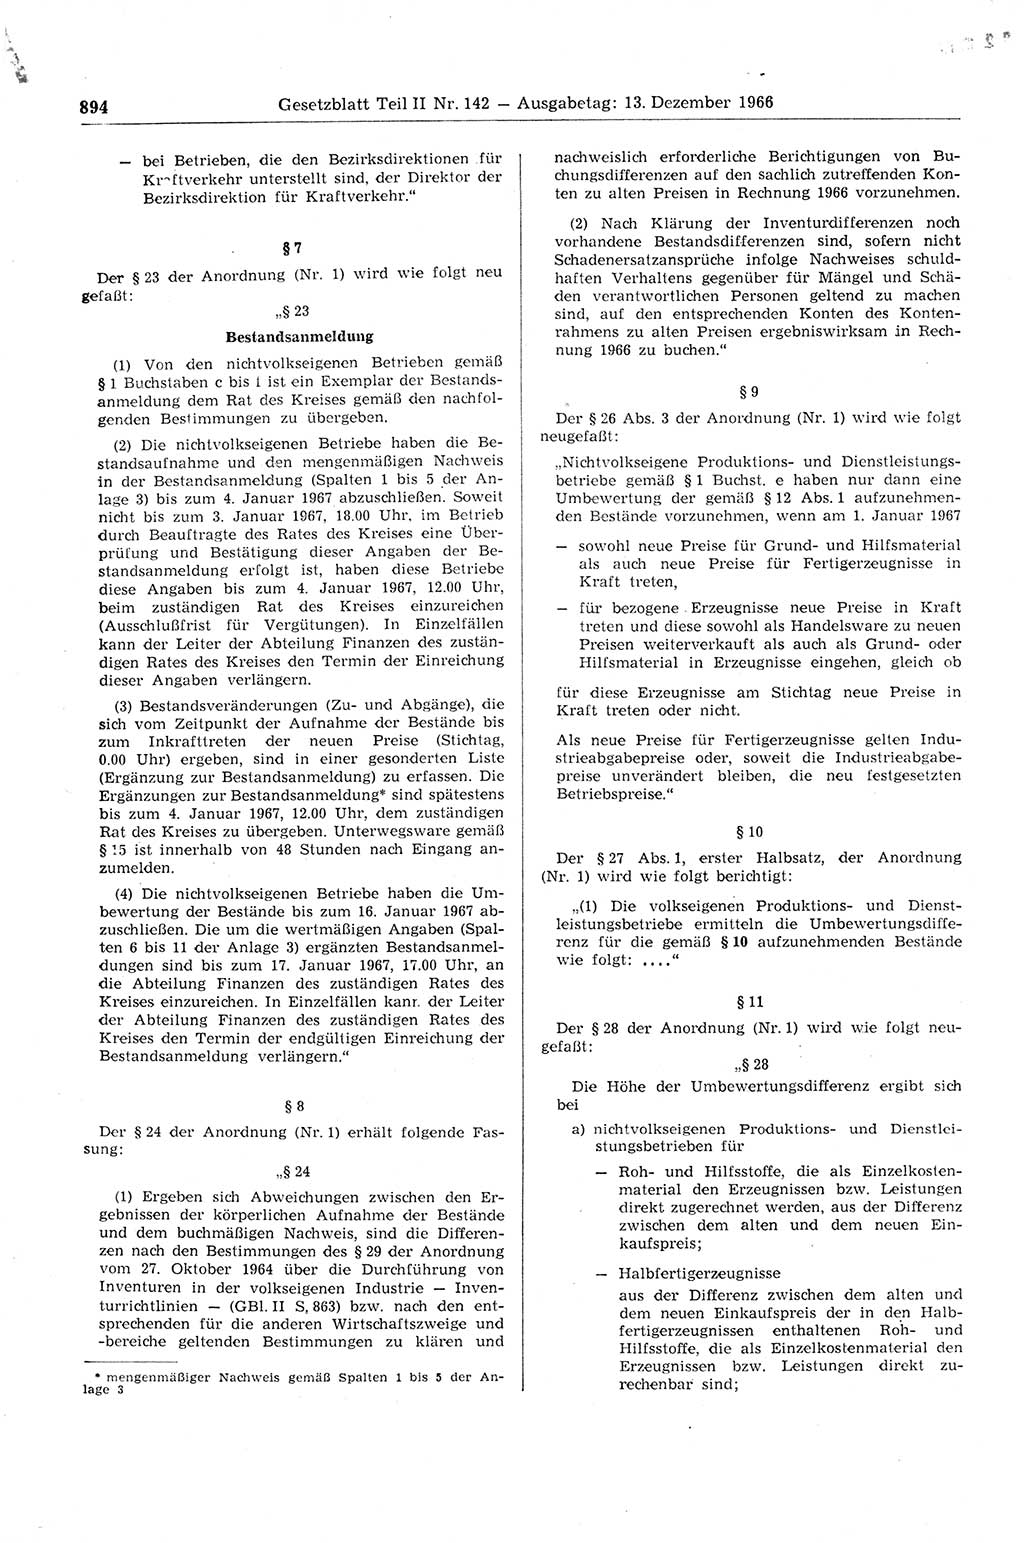 Gesetzblatt (GBl.) der Deutschen Demokratischen Republik (DDR) Teil ⅠⅠ 1966, Seite 894 (GBl. DDR ⅠⅠ 1966, S. 894)